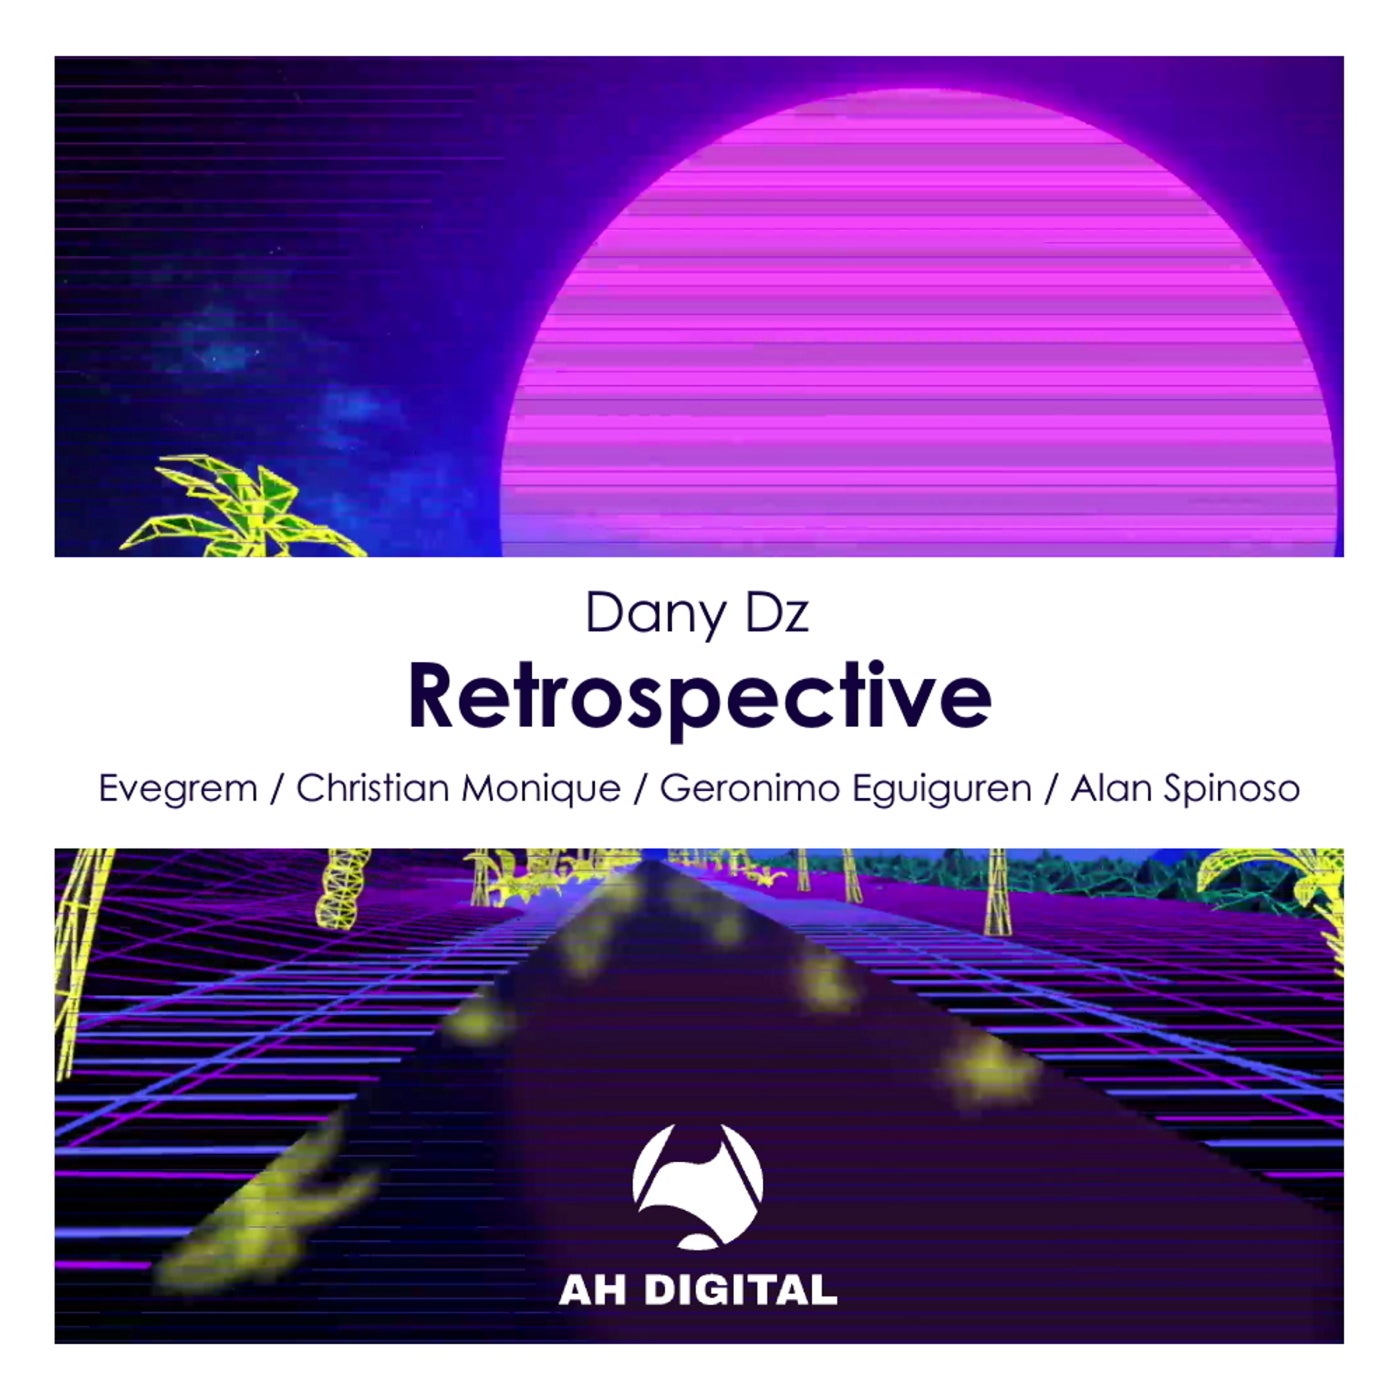 Dany Dz - Retrospective (Christian Monique Remix)